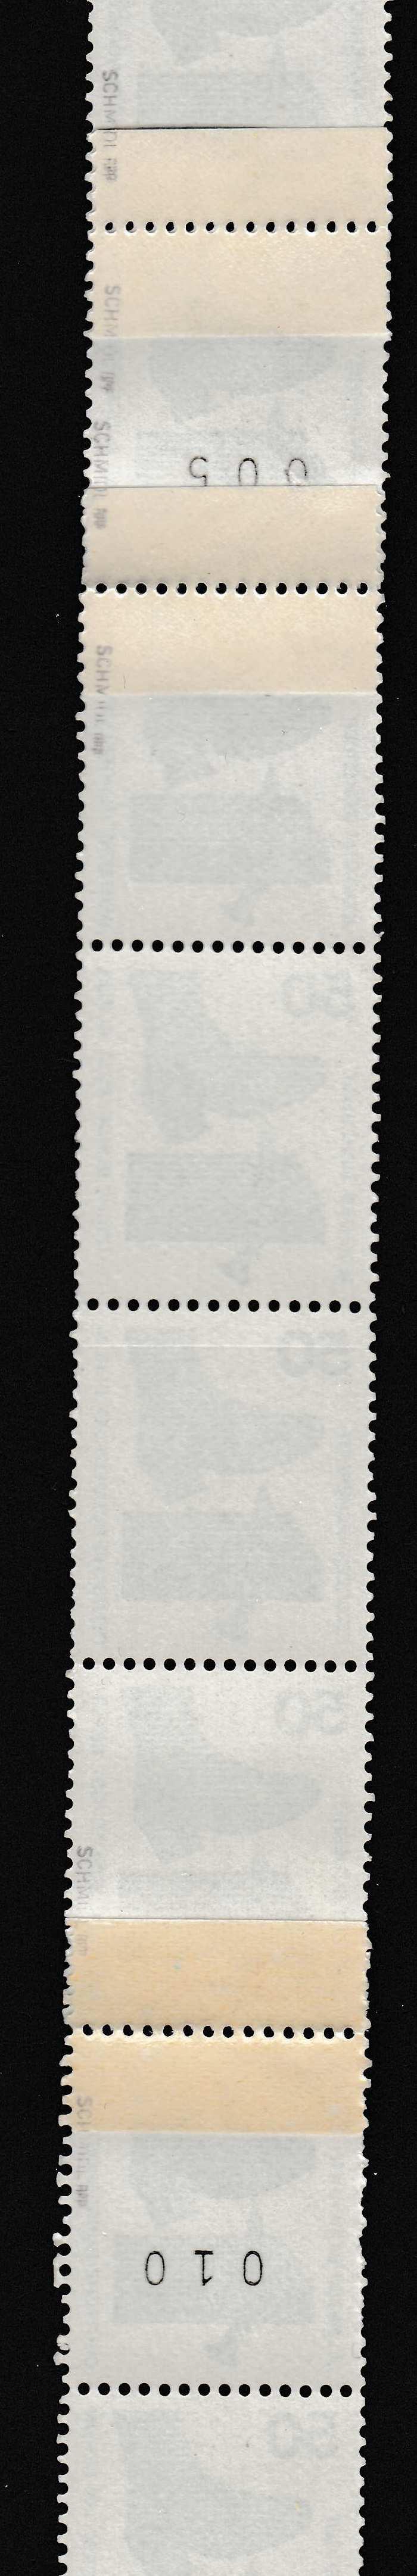 Amtliche Flickstellen Bund und Berlin I Bei der Produktion der Rollenmarken kommt es recht selten vor, dass die Briefmarkenbahn reißt.